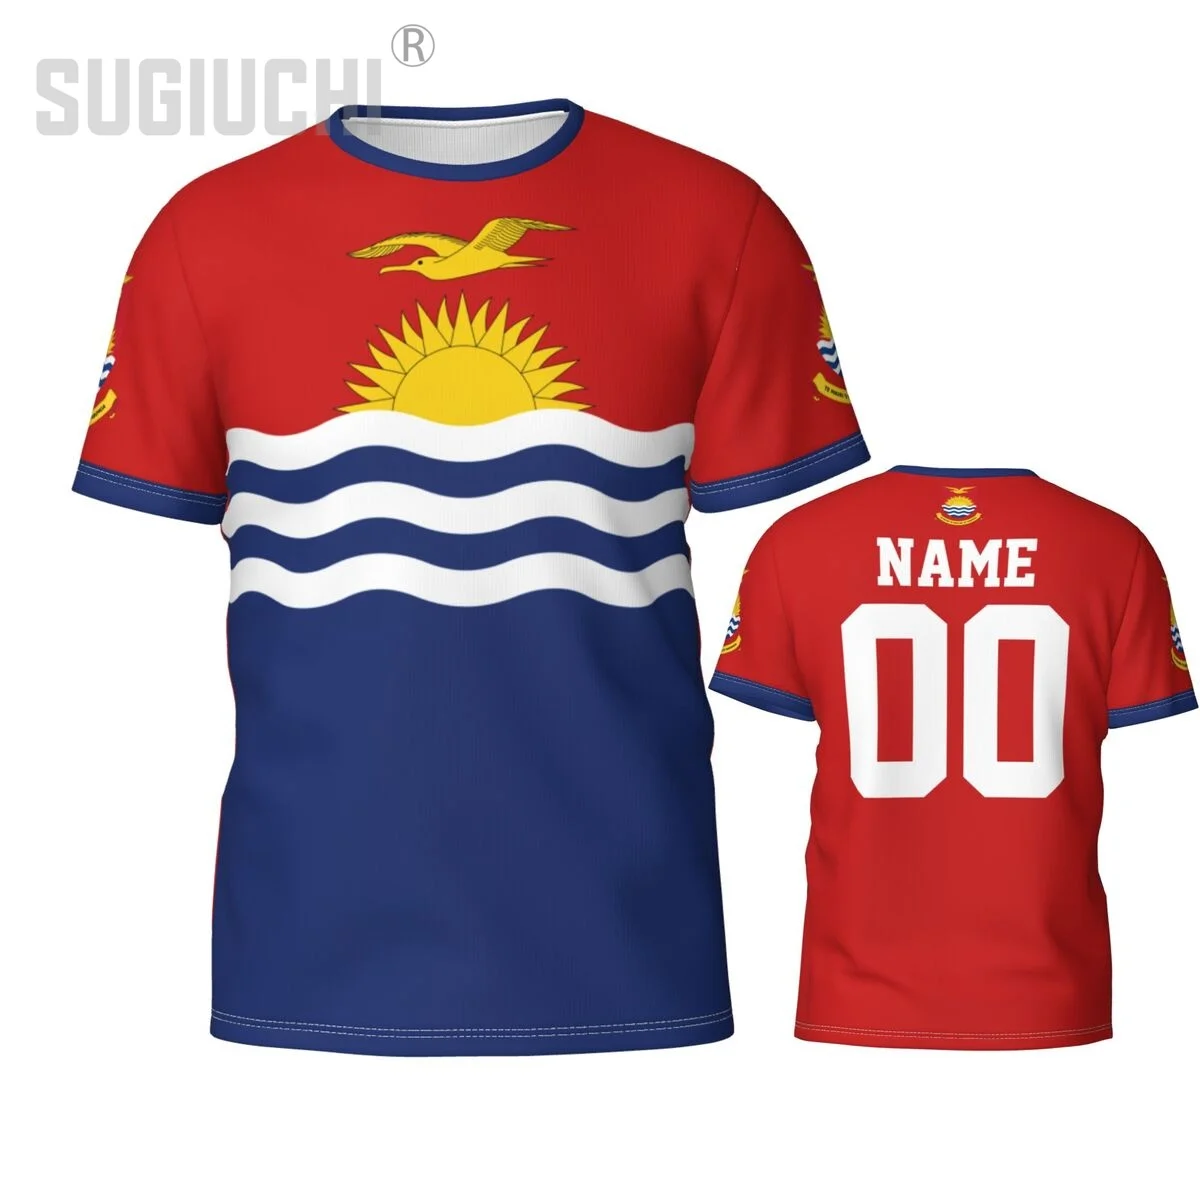 

Футболка с логотипом Кирибати, эмблема флага, 3D футболки для мужчин и женщин, футболки, джерси, одежда для команды, футбольные фанаты, подарок, футболка